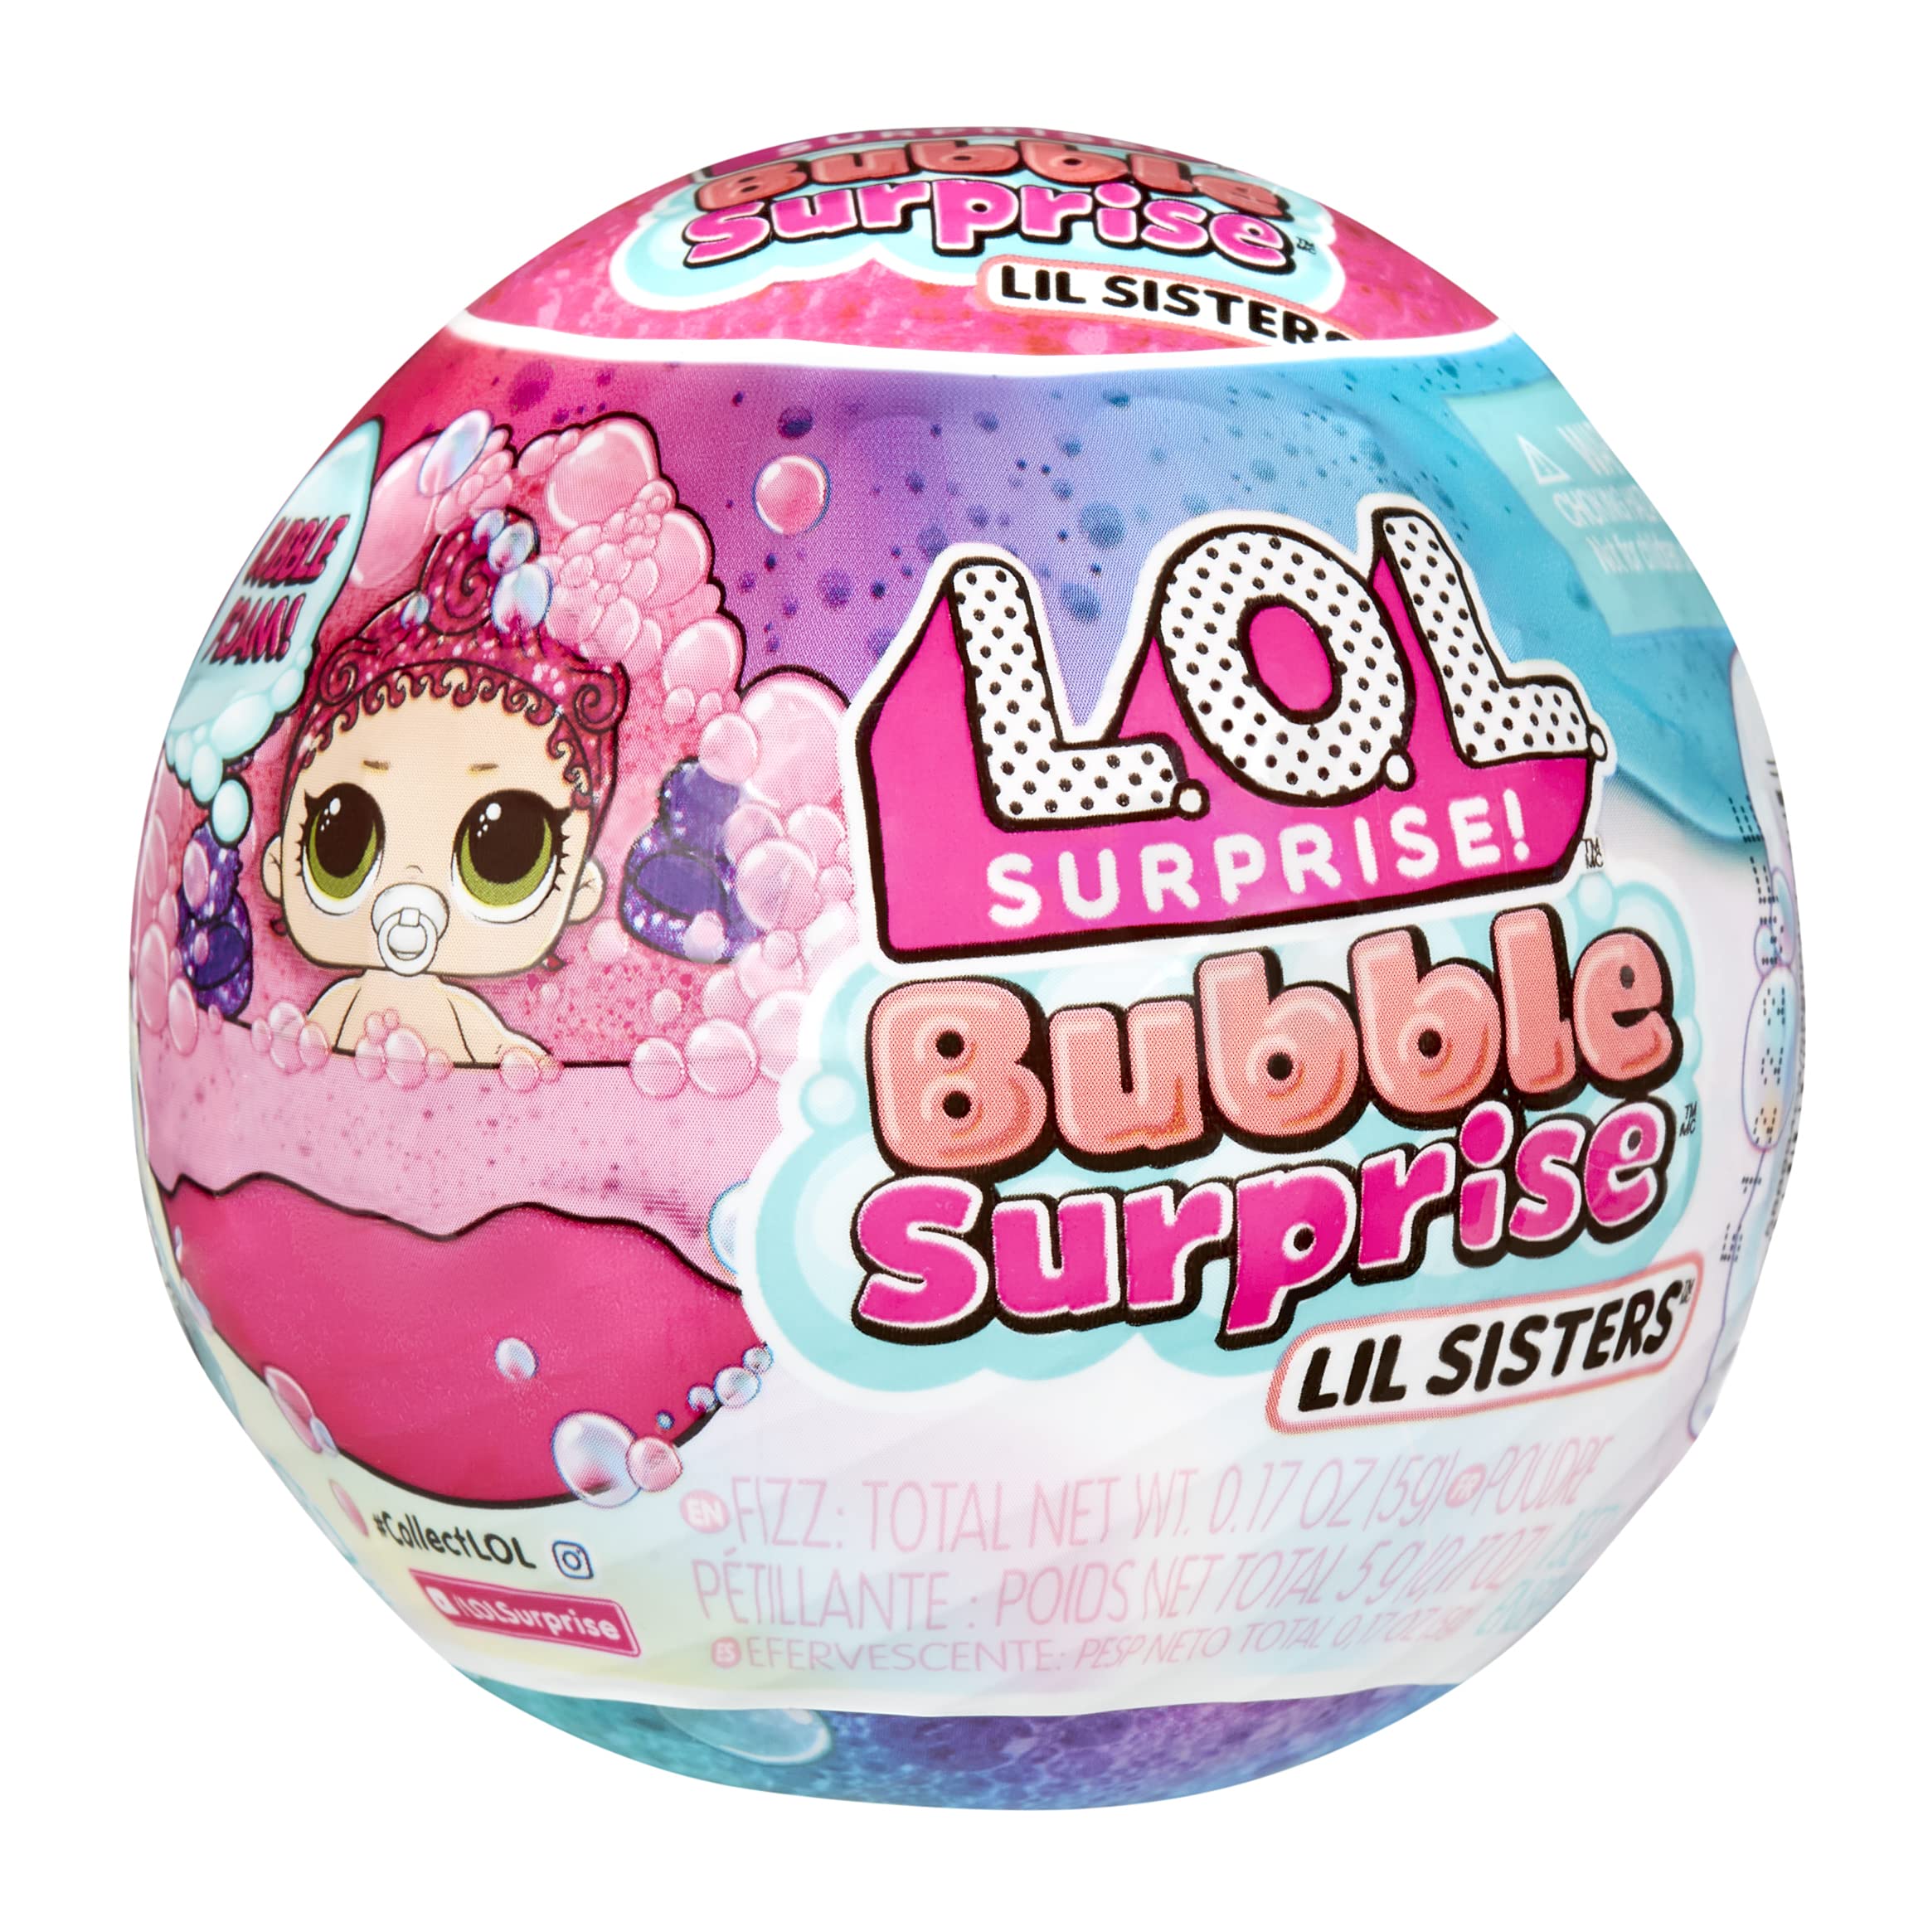 L.O.L. Surprise! Bubble Surprise Lil Sisters 3-Pack